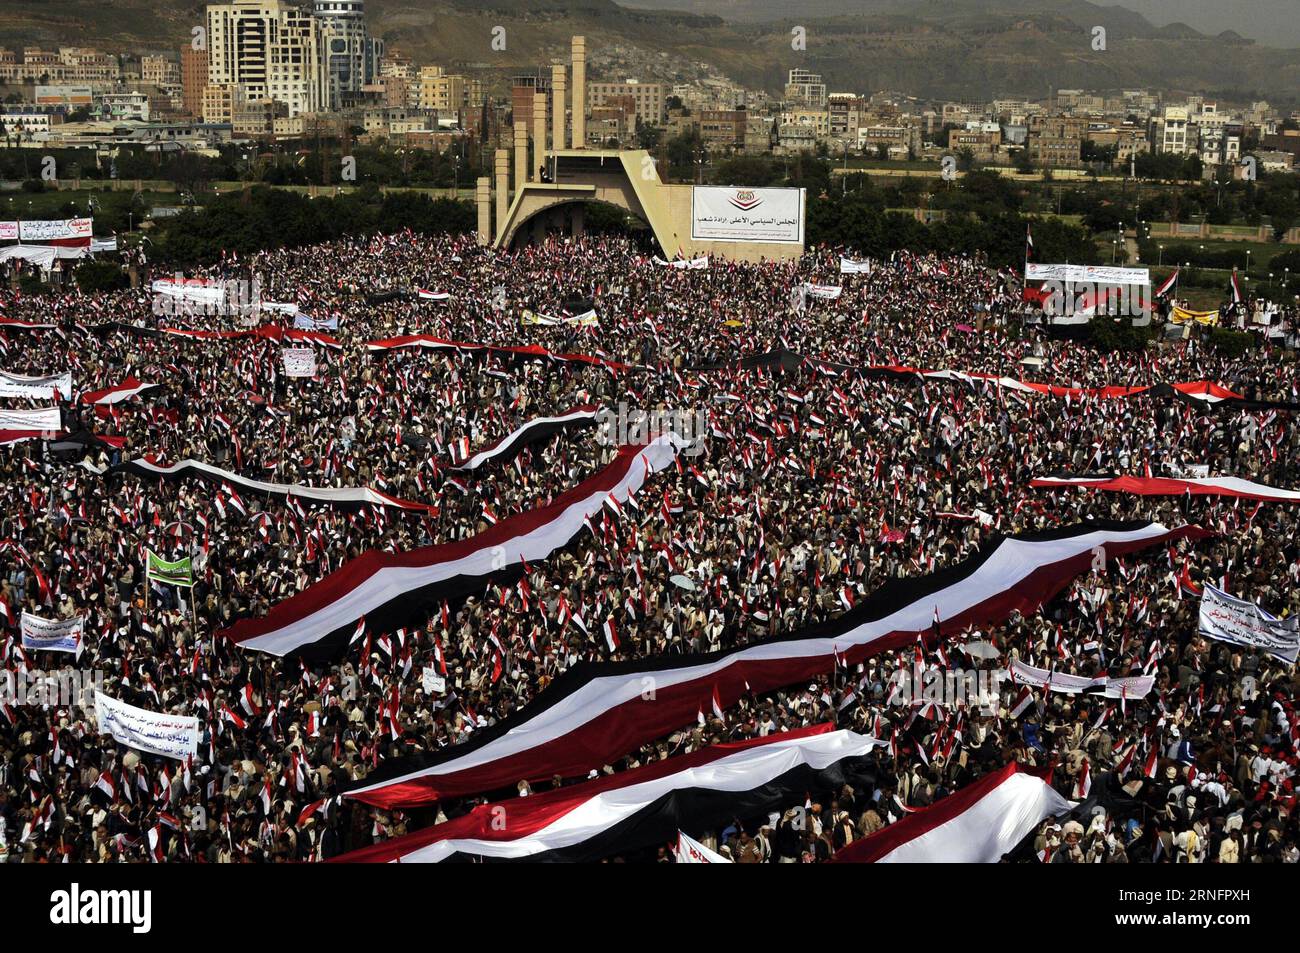 Themen der Woche (160821) -- SANAA, 20. Aug. 2016 -- Menschen sammeln sich, um Unterstützung für einen politischen rat in Sanaa, Jemen, 20. Aug. 2016 zu zeigen. Millionen von Menschen aus allen jemenitischen Gebieten drängten sich am Samstag im Zentrum der jemenitischen Hauptstadt Sanaa, um die Bildung eines neuen regierenden politischen rates unter dem Vorsitz der Huthi-Rebellen und ihrer verbündeten mächtigen Partei des ehemaligen Präsidenten Ali Abdullah Saleh zu unterstützen und zu segnen. )(zcc) JEMEN-SANAA-RALLY HanixAli PUBLICATIONxNOTxINxCHN Themen die Woche 160821 Sanaa 20. August 2016 Prominente Rally, um Unterstützung für einen politischen Rat in Sanaa zu zeigen Jemen 20. August 20 Stockfoto